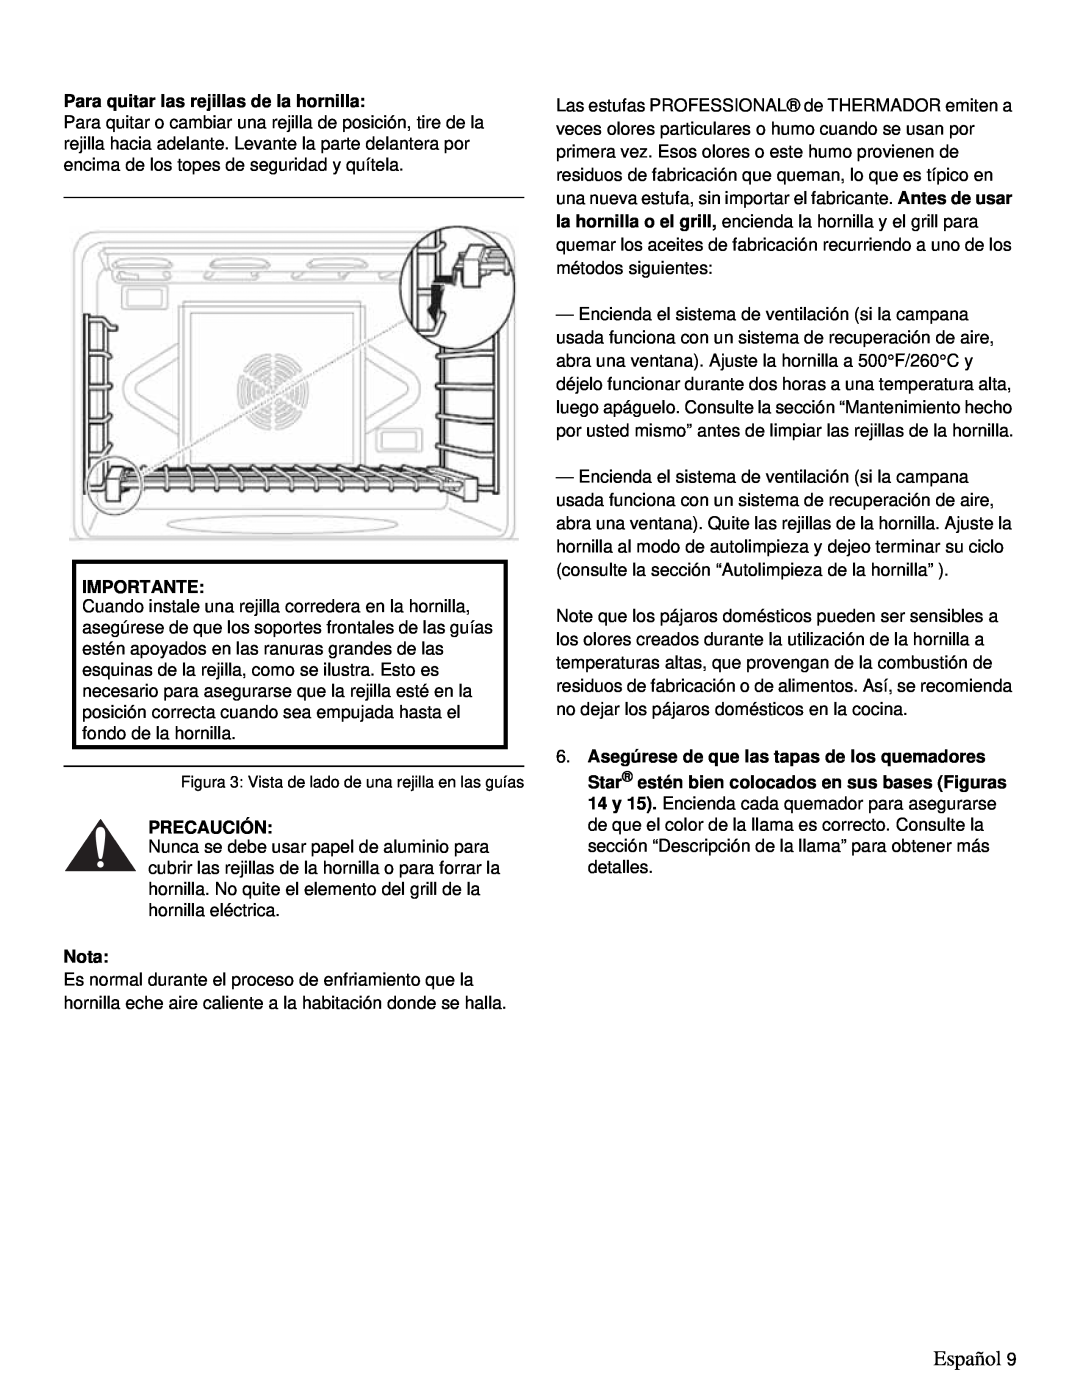 Thermador PRD36, PRD48 manual Español, Para quitar las rejillas de la hornilla, Importante, Precaución, Nota 